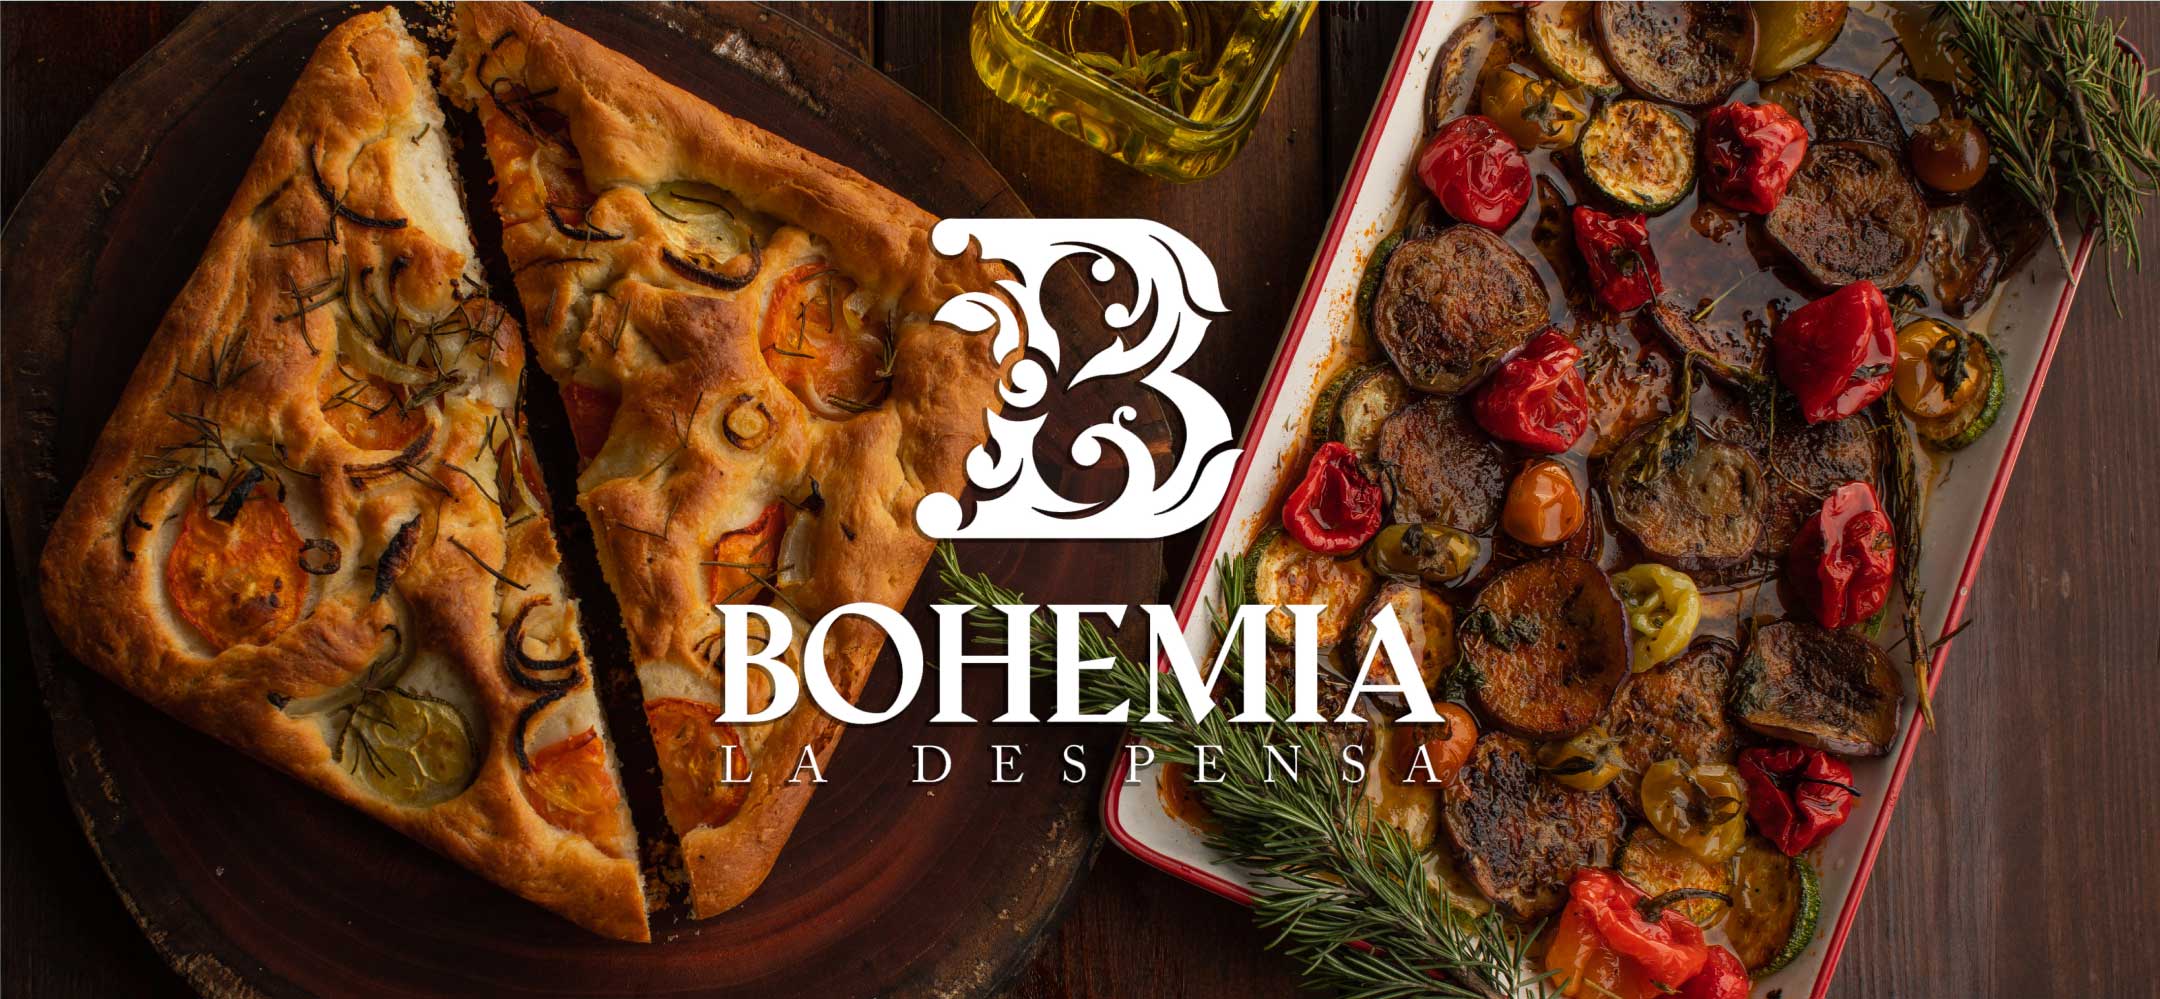 Bohemia La Despensa